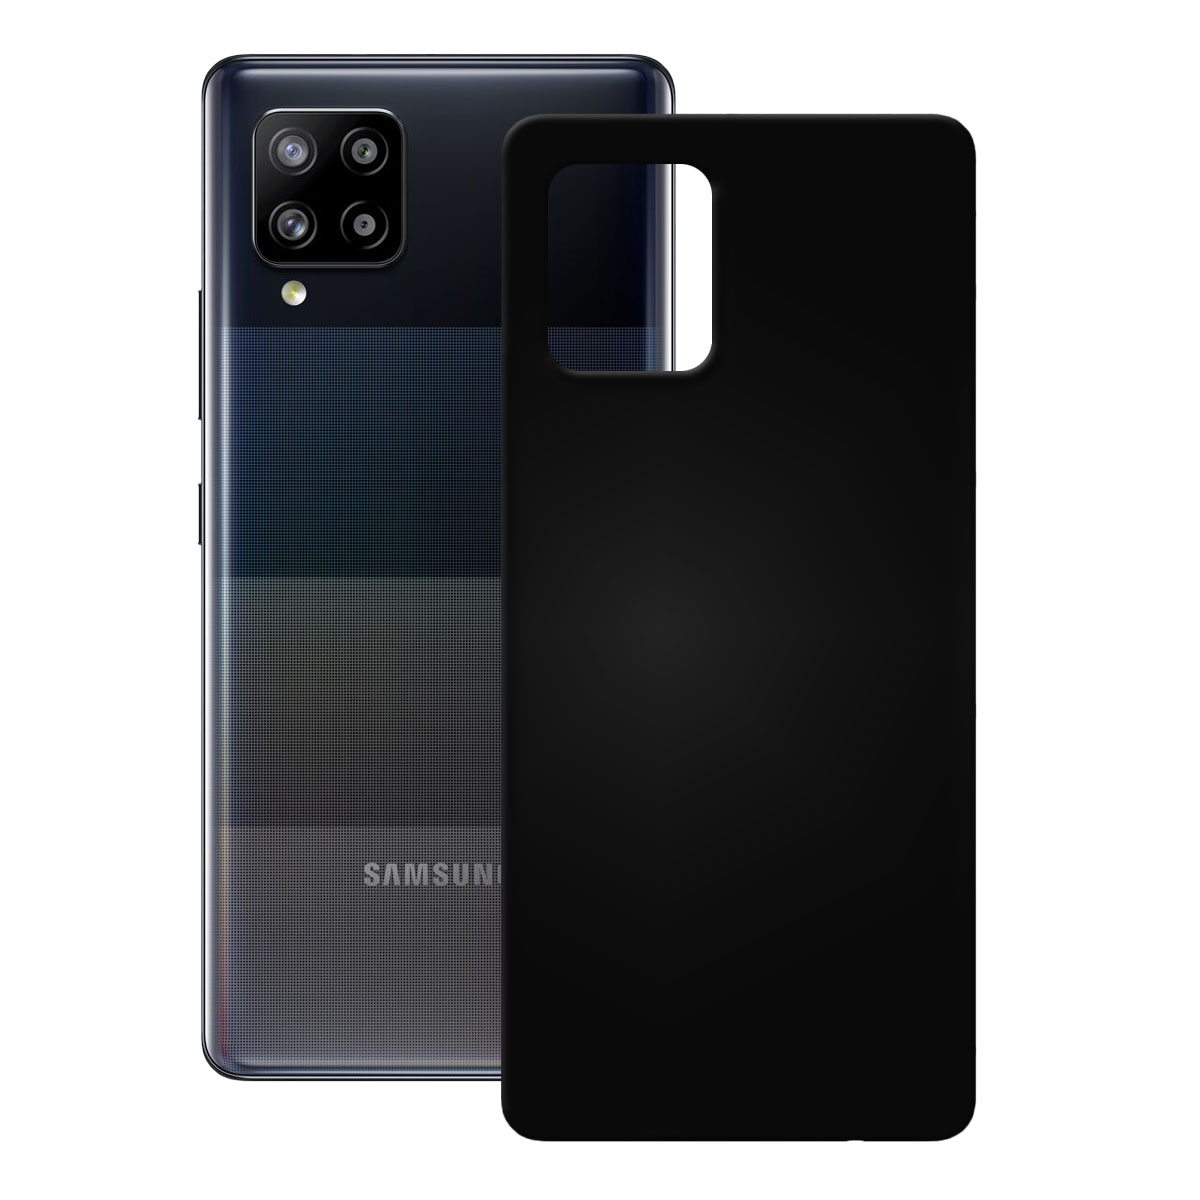 Backcover, Samsung, 5 TPU A42 Schwarz PEDEA G, Case, Galaxy